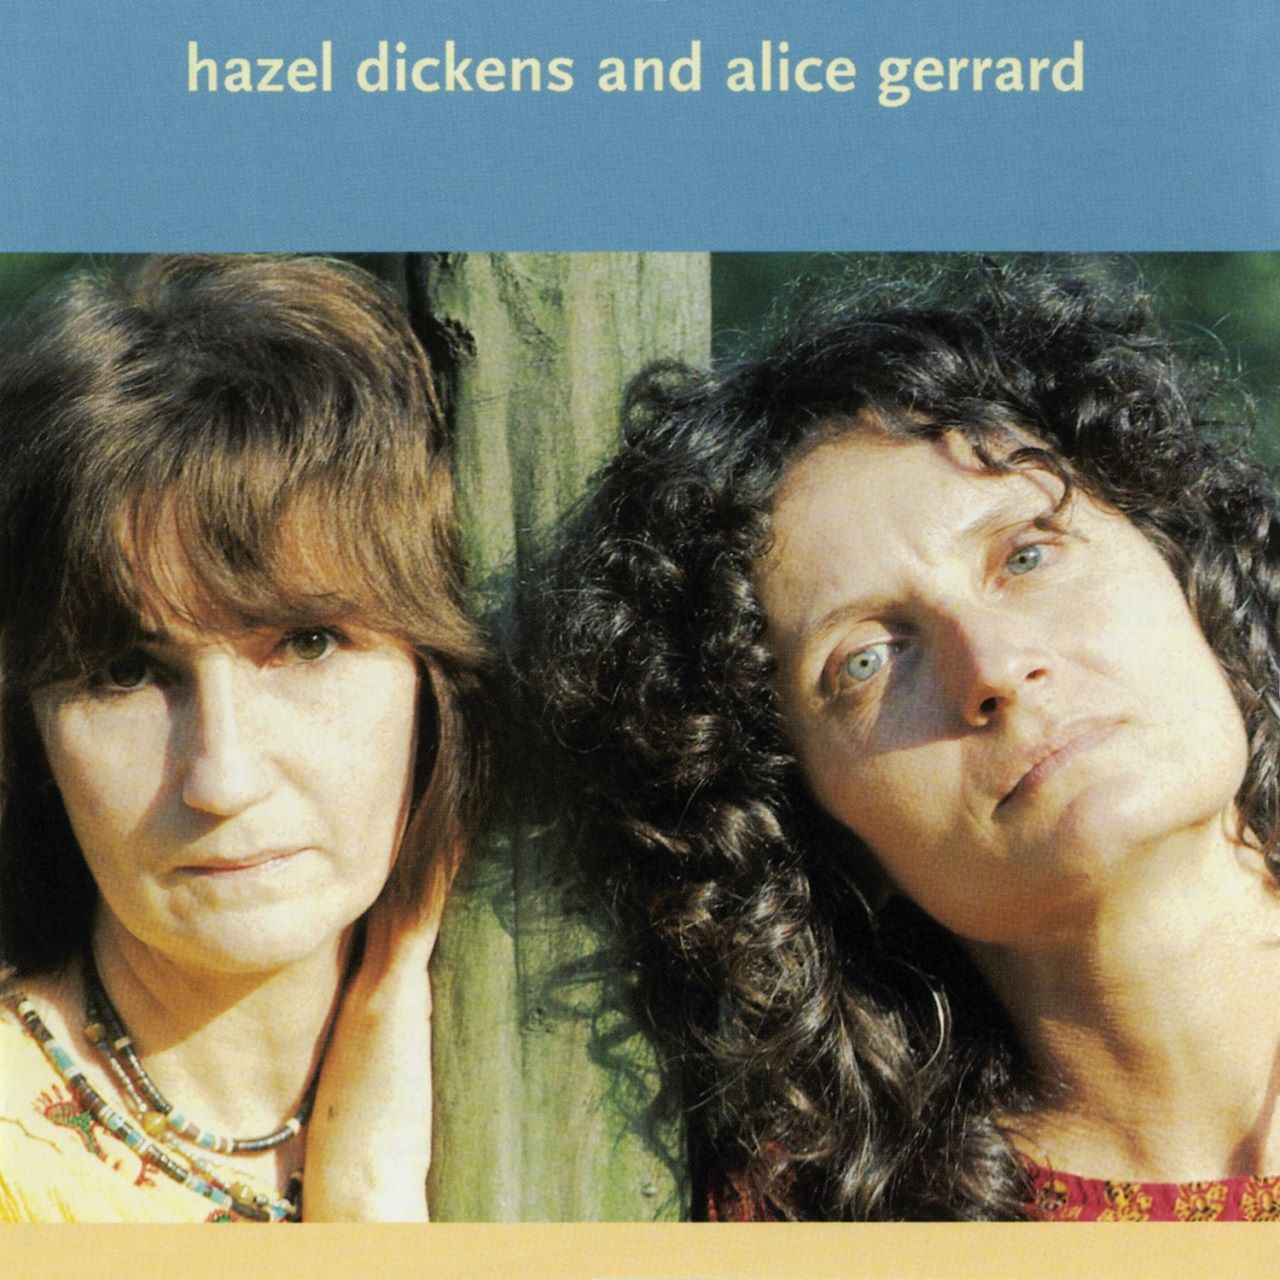 Hazel Dickens & Alice Gerrard - Hazel Dickens & Alice Gerrard cover album